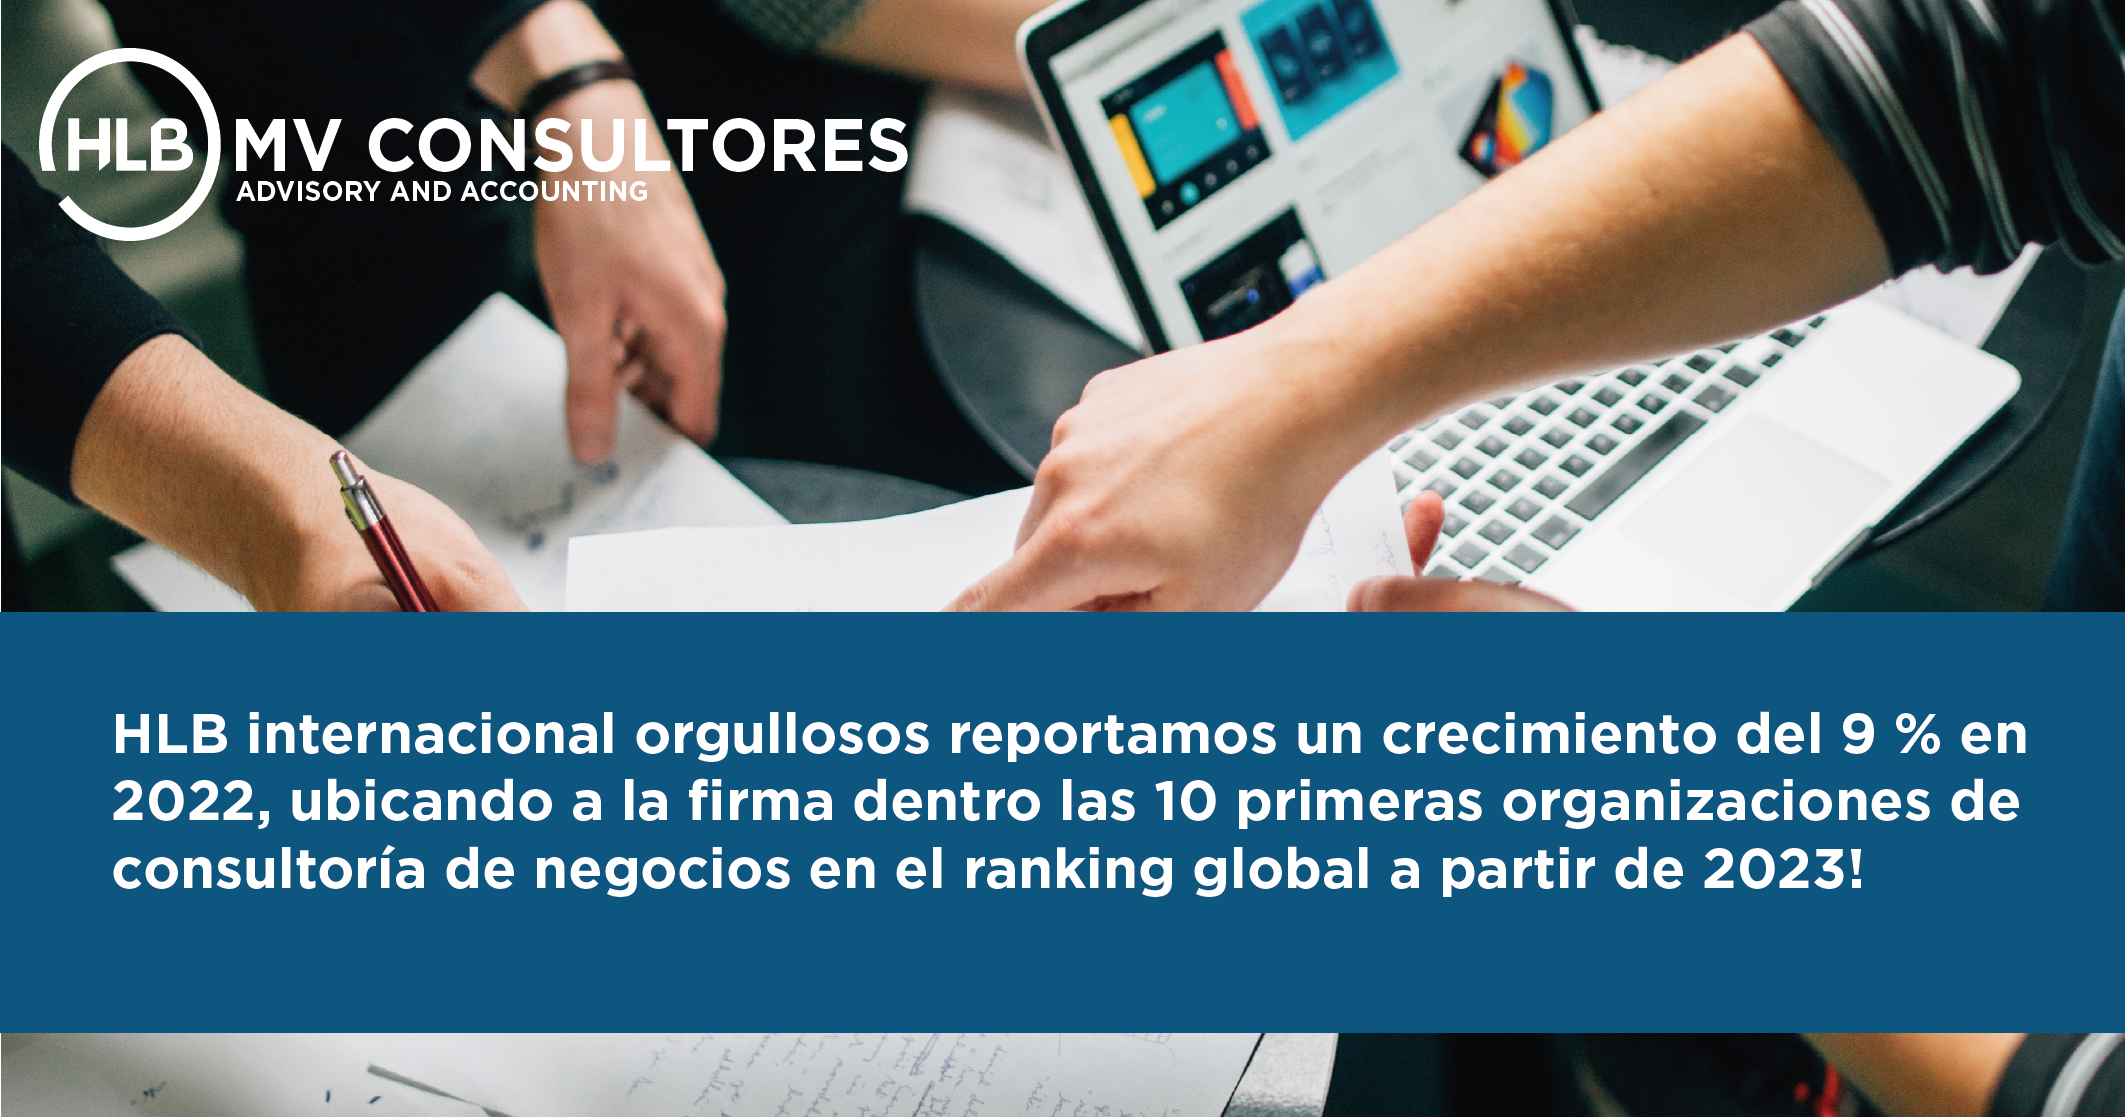 Featured image for “HLB internacional orgullosos reportamos un crecimiento del 9 % en 2022, ubicando a la firma dentro las 10 primeras organizaciones de consultoría de negocios en el ranking global a partir de 2023!”